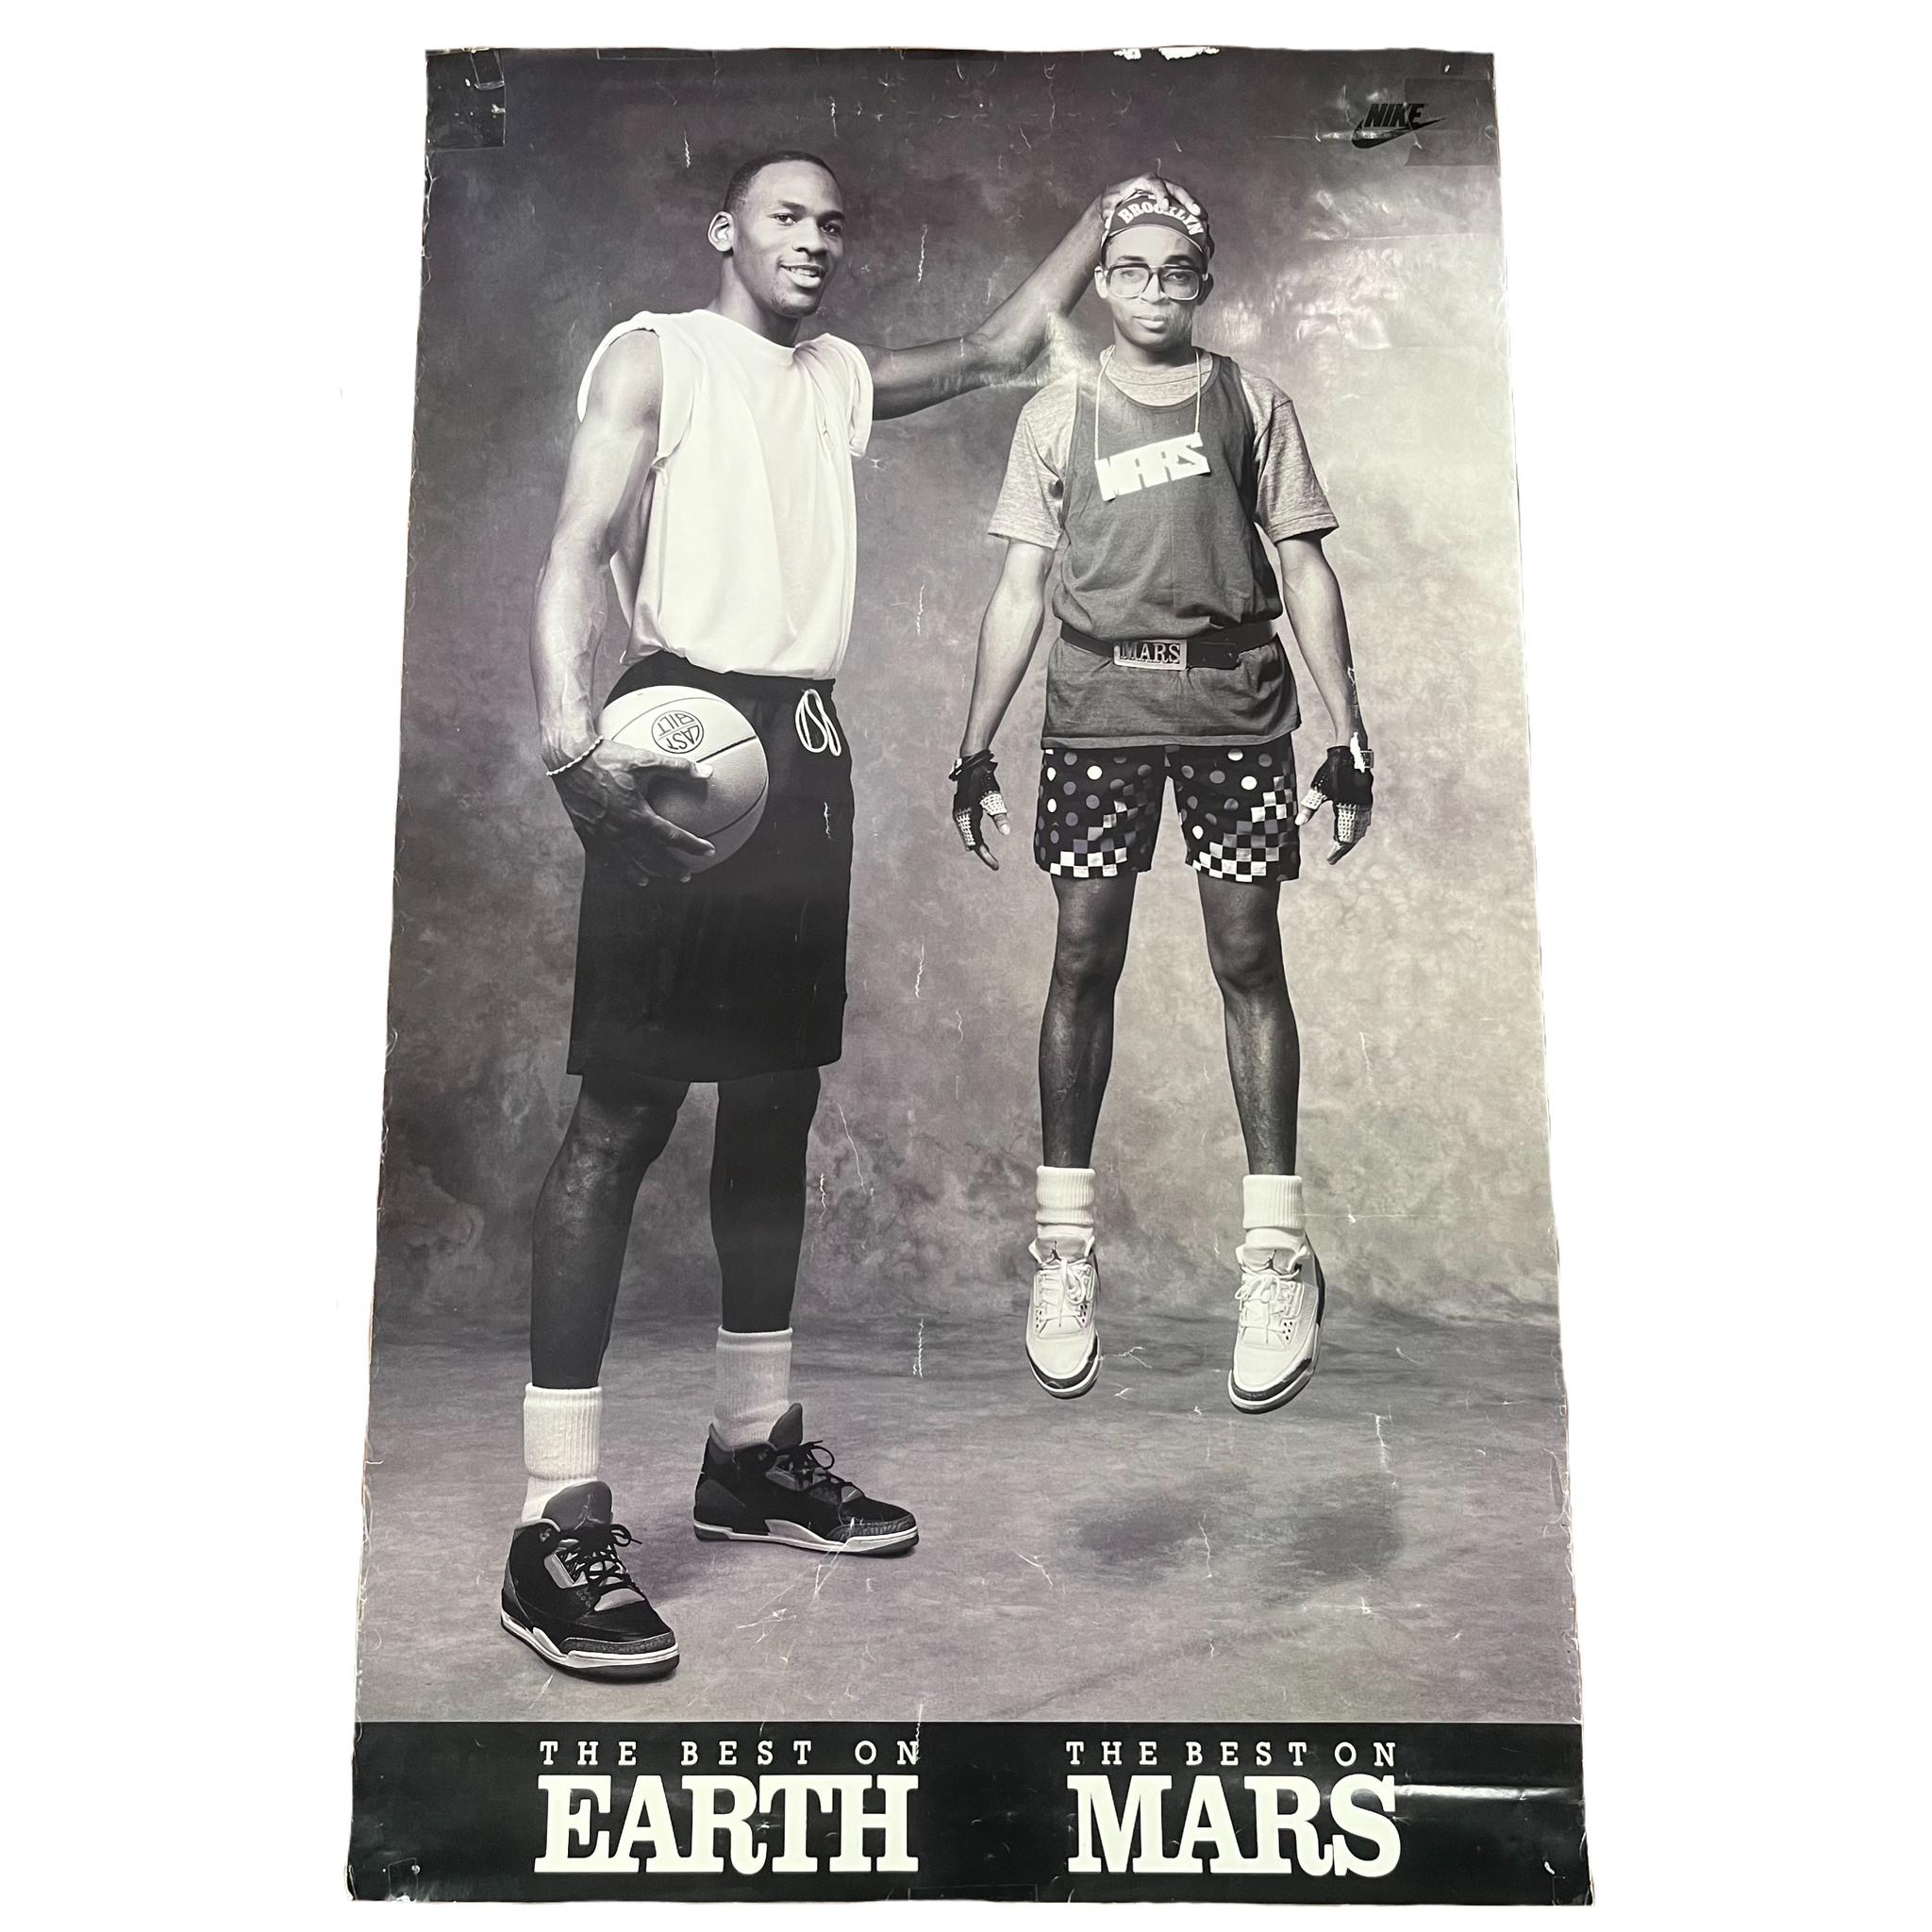 Vintage Nike Michael Jordan Spike Lee Earth Mars Poster